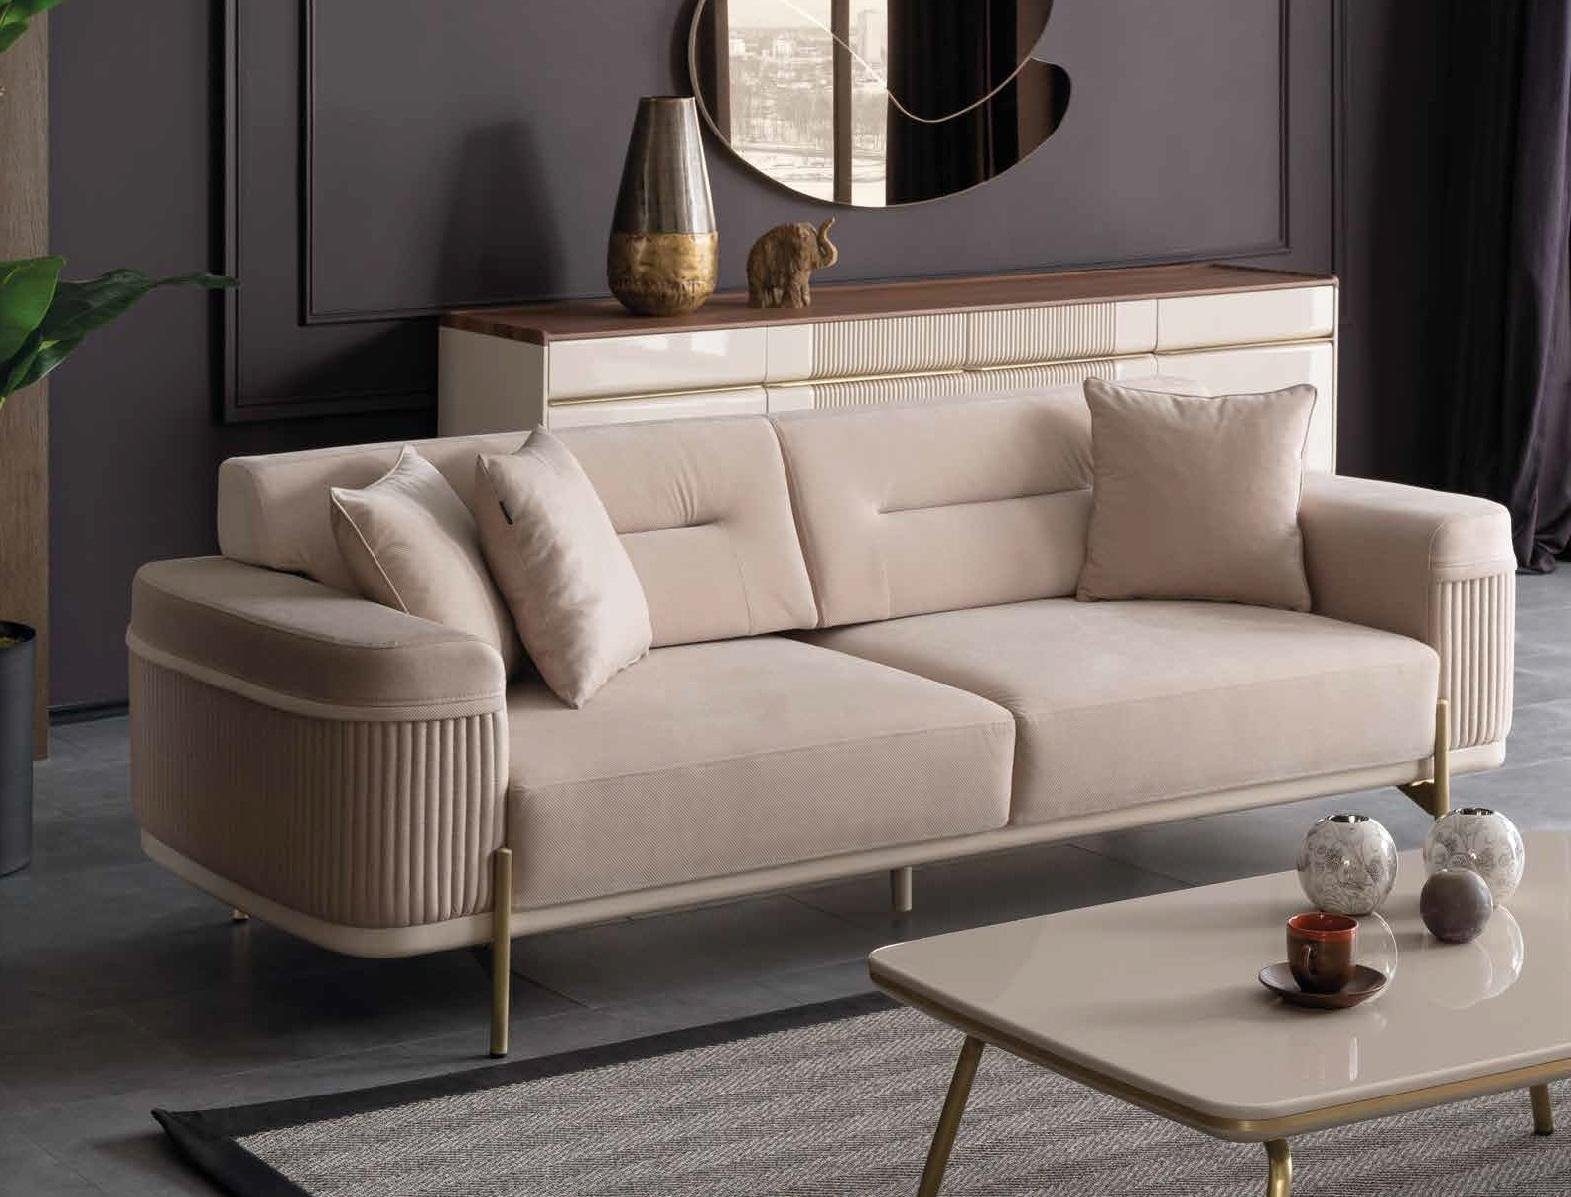 JVmoebel Sofa Beiger Textil Dreisitzer luxus Möbel 3-Sitzer Couch Neu, Made in Europe